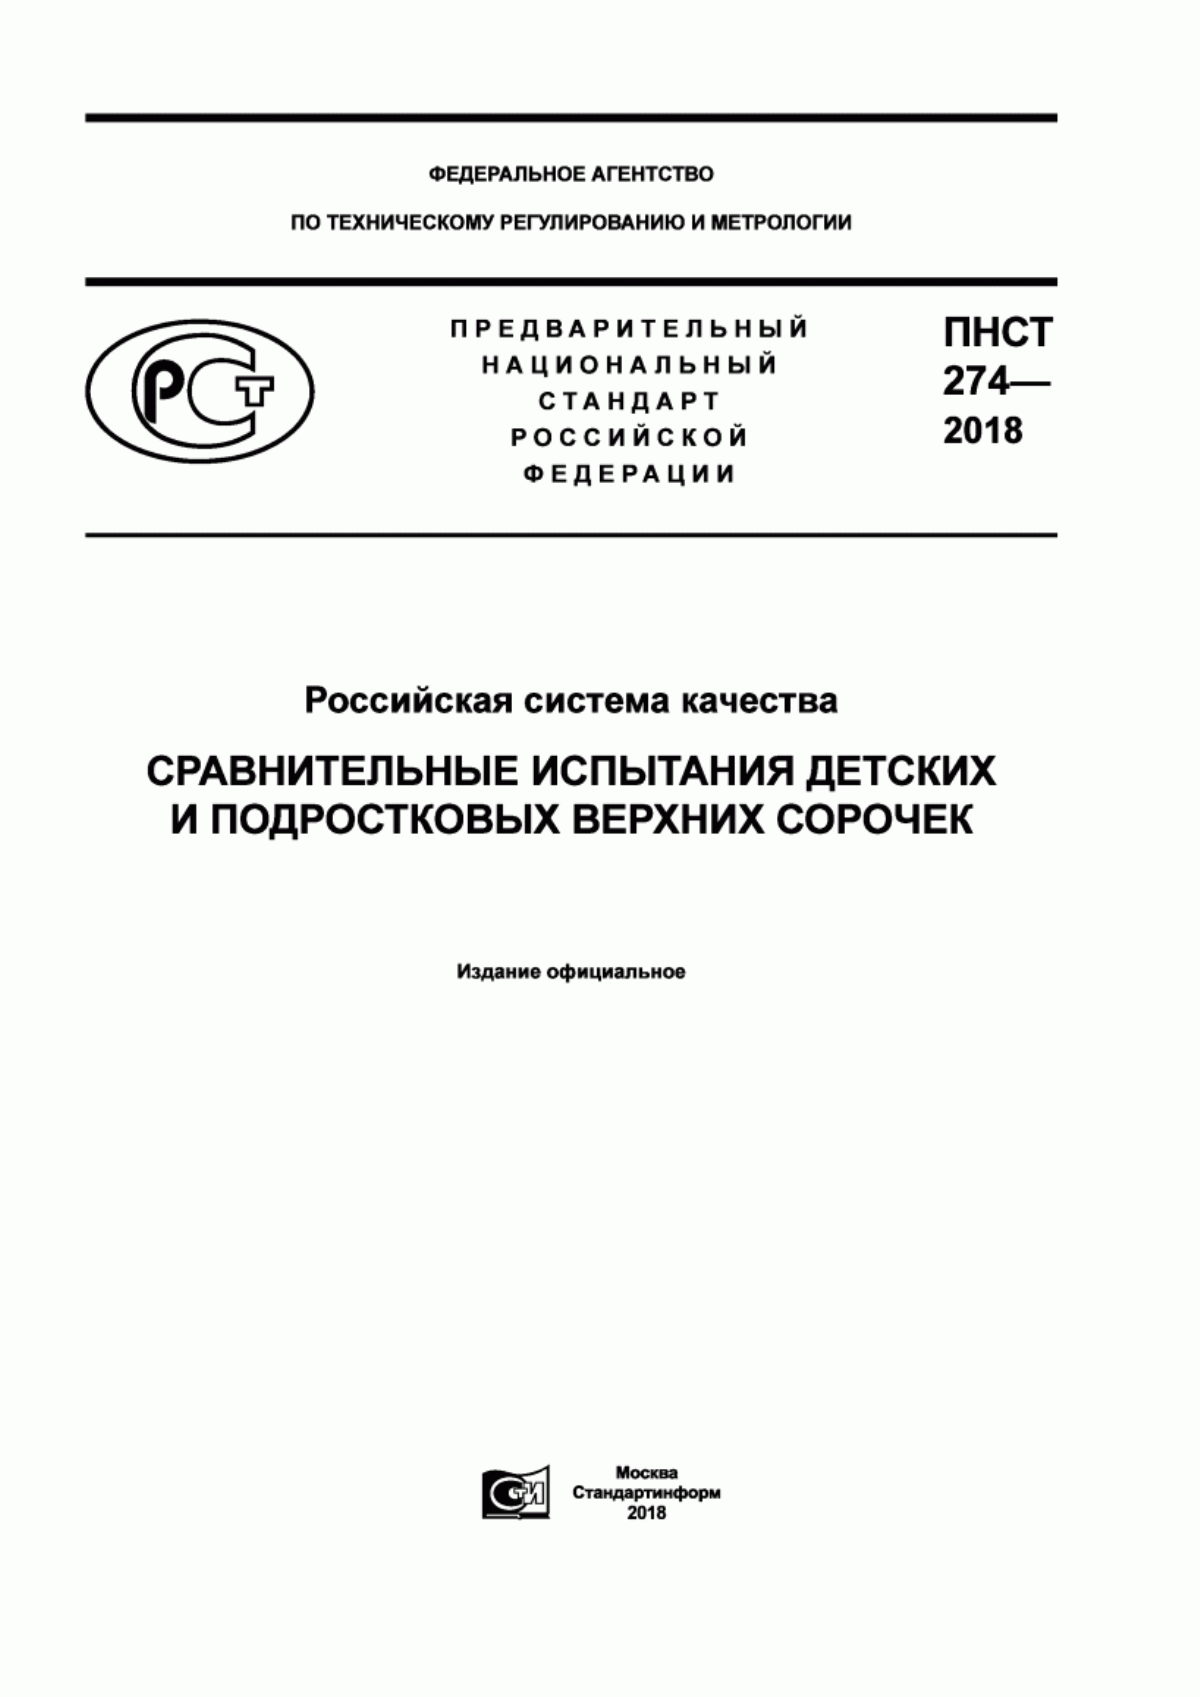 ПНСТ 274-2018 Российская система качества. Сравнительные испытания детских и подростковых верхних сорочек